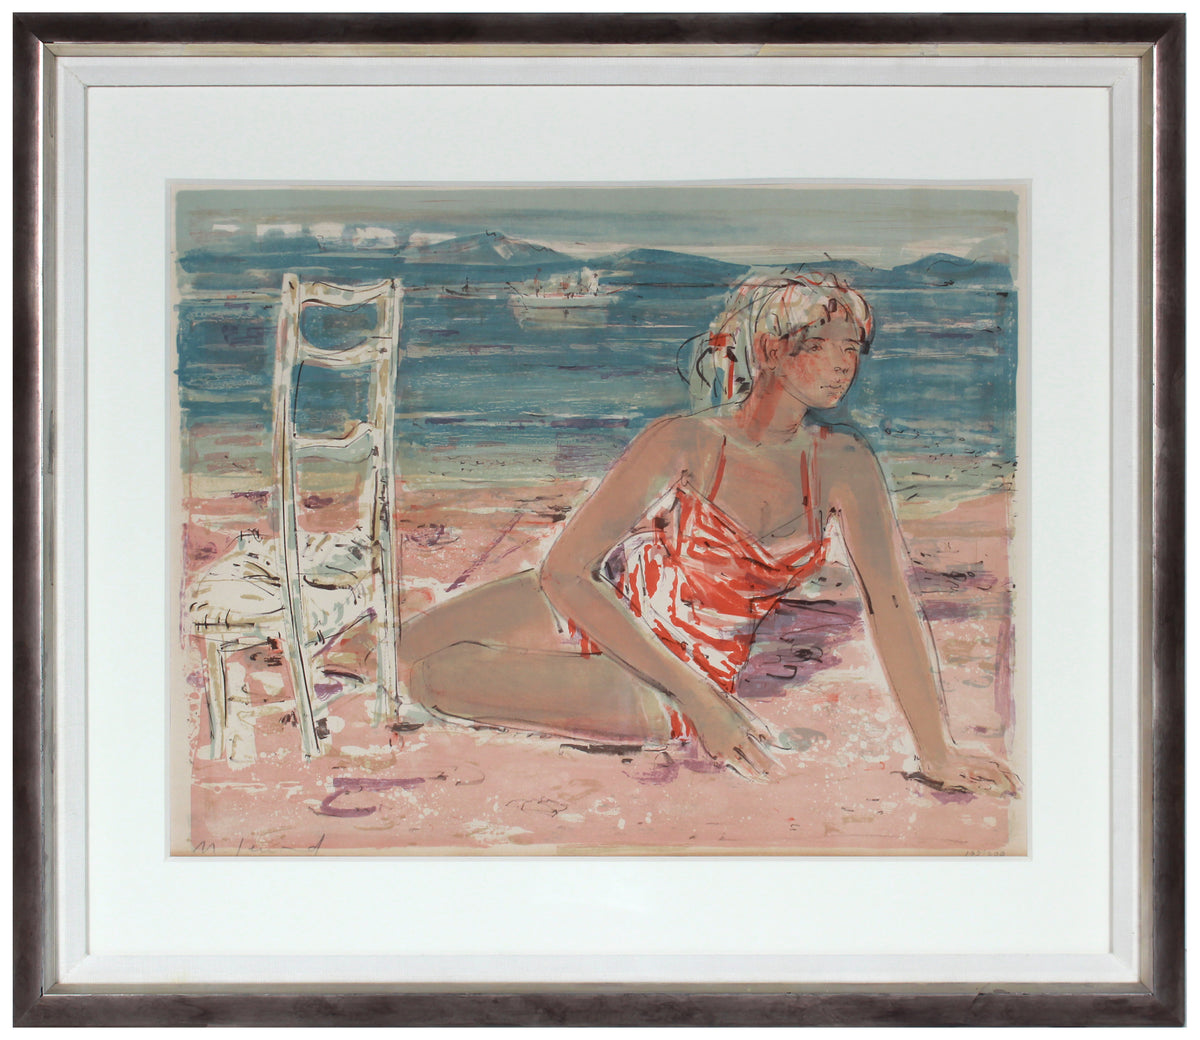 &lt;i&gt;Jeune fille sur la grêve (Young Girl on the Beach)&lt;/i&gt; &lt;br&gt;1960 Lithograph &lt;br&gt;&lt;br&gt;#B1104